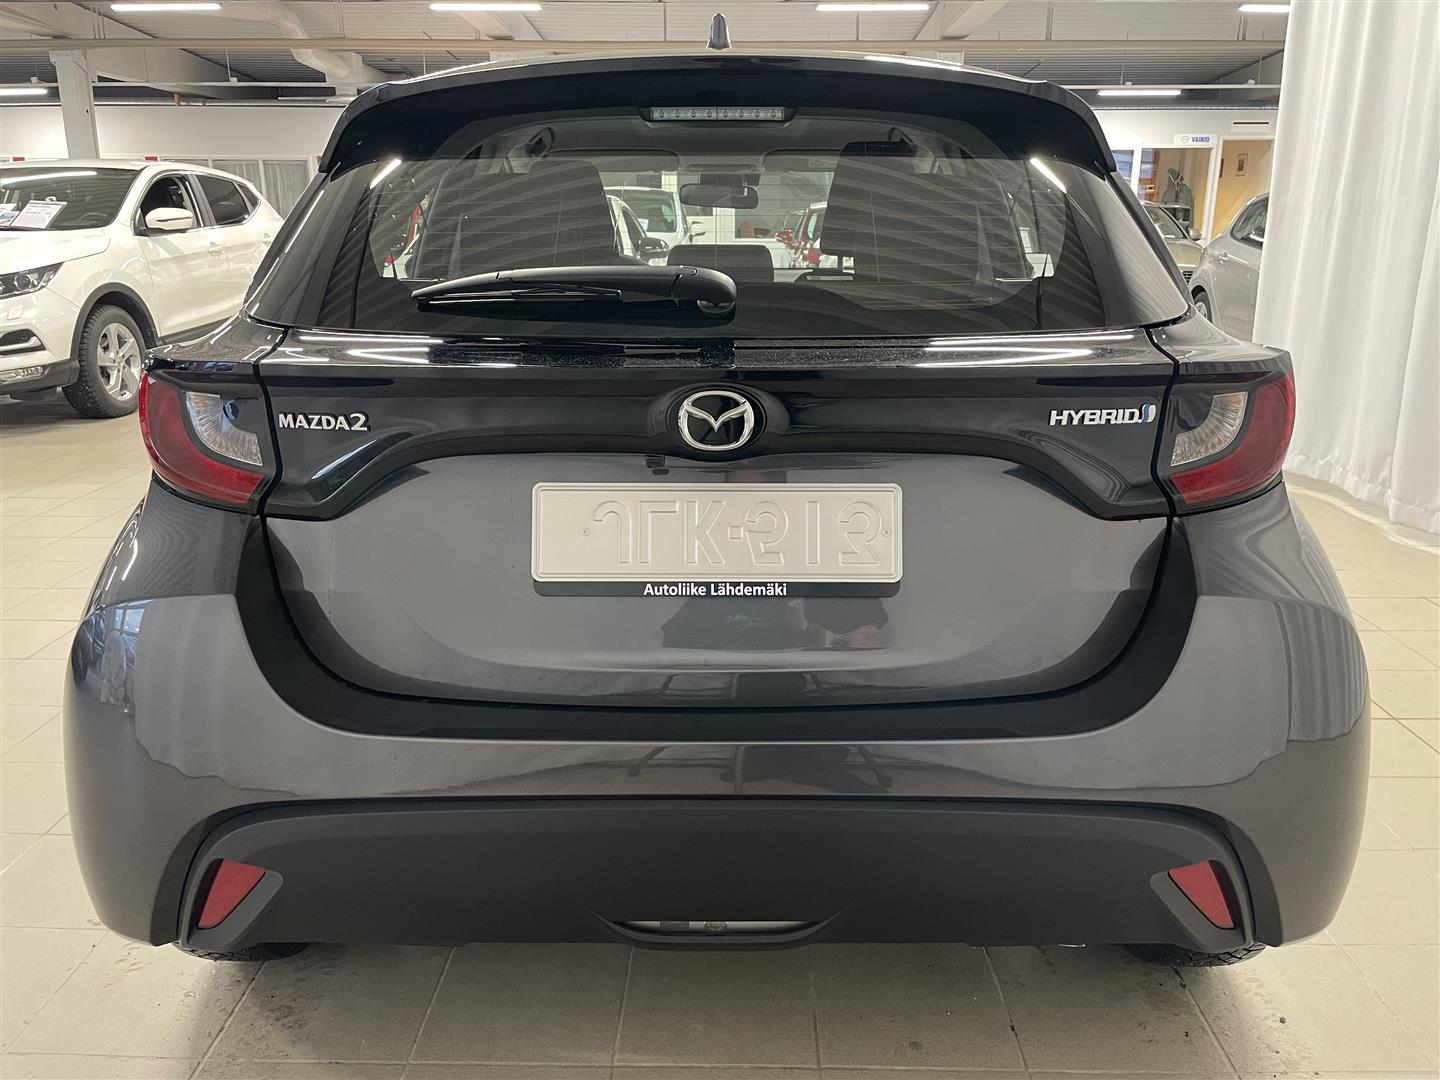 Mazda Mazda2 Hybrid 1.5 (116) Agile